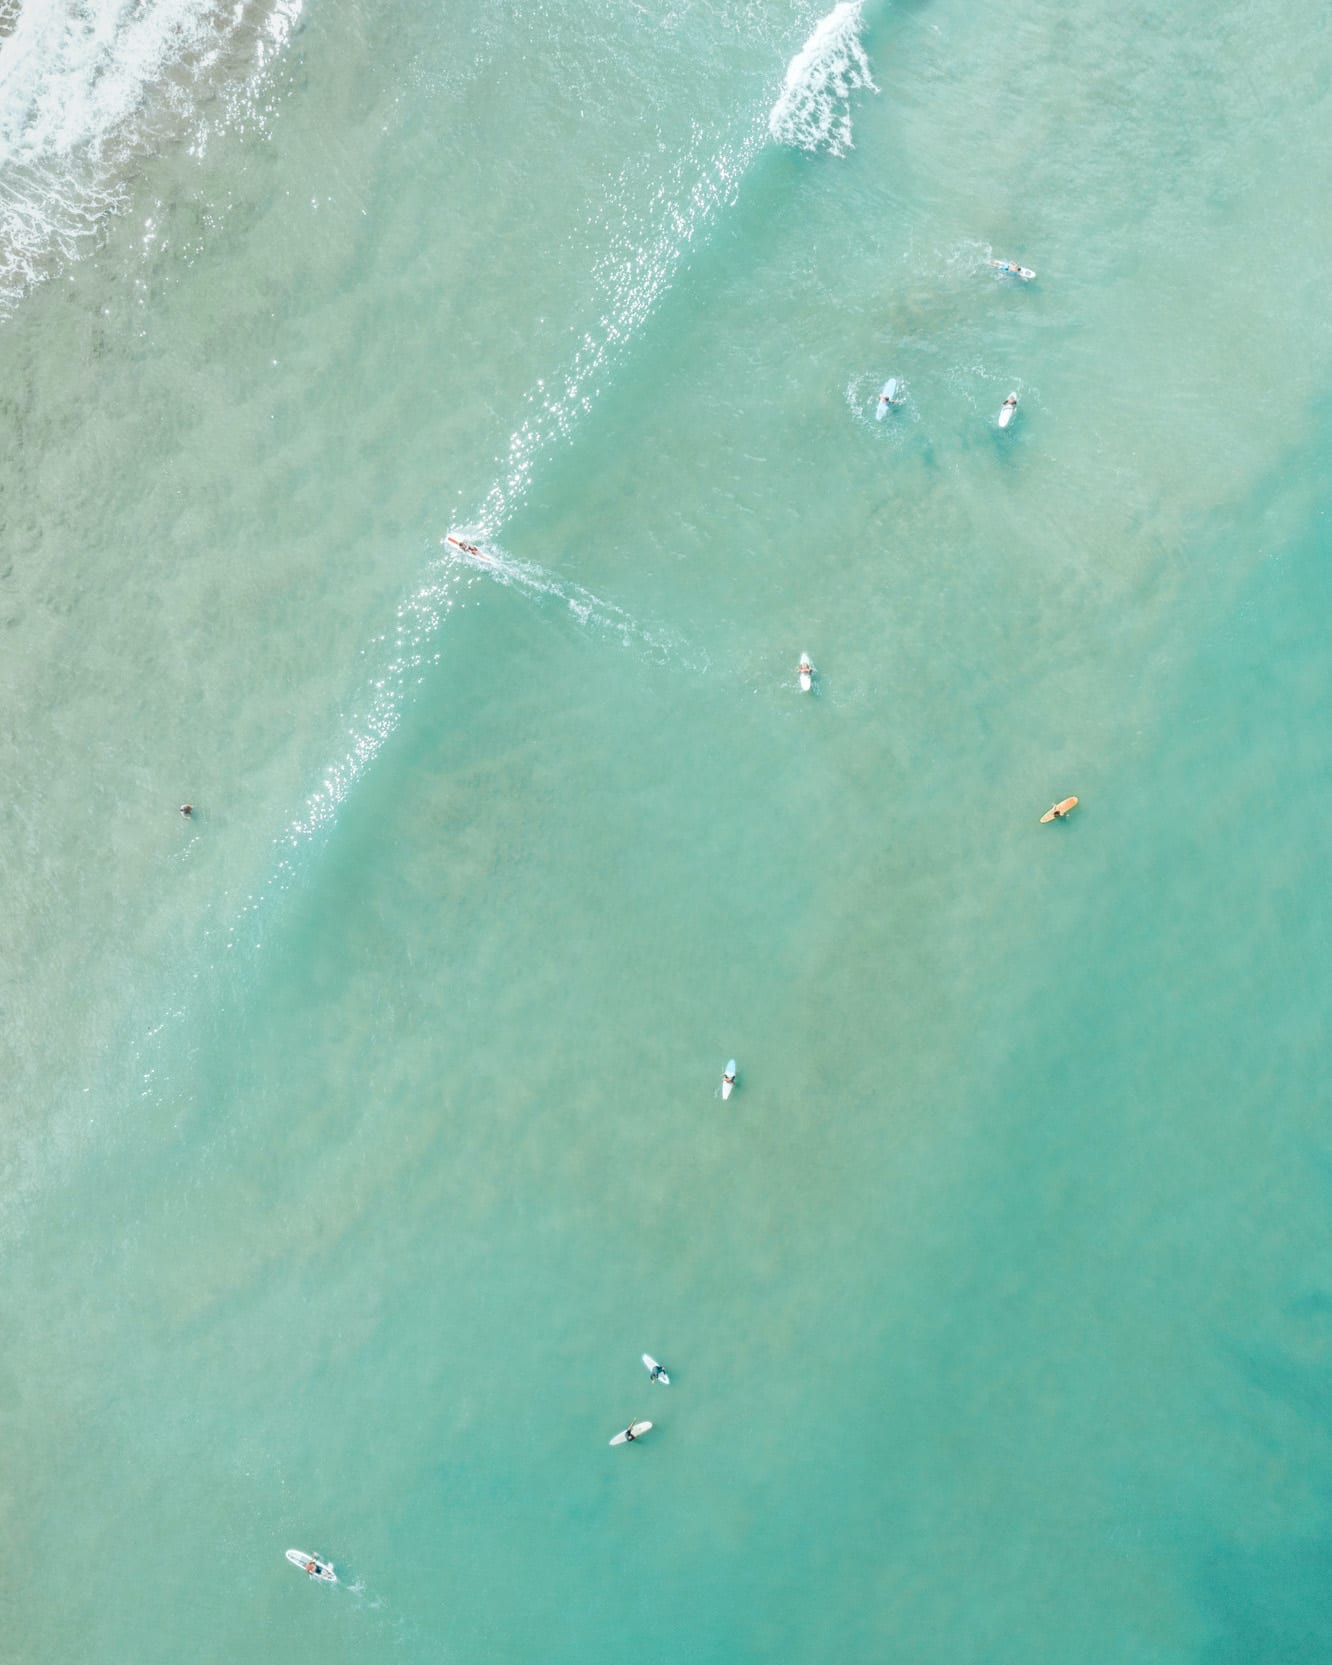 Kauai surfers, edited with @finduslostpresets